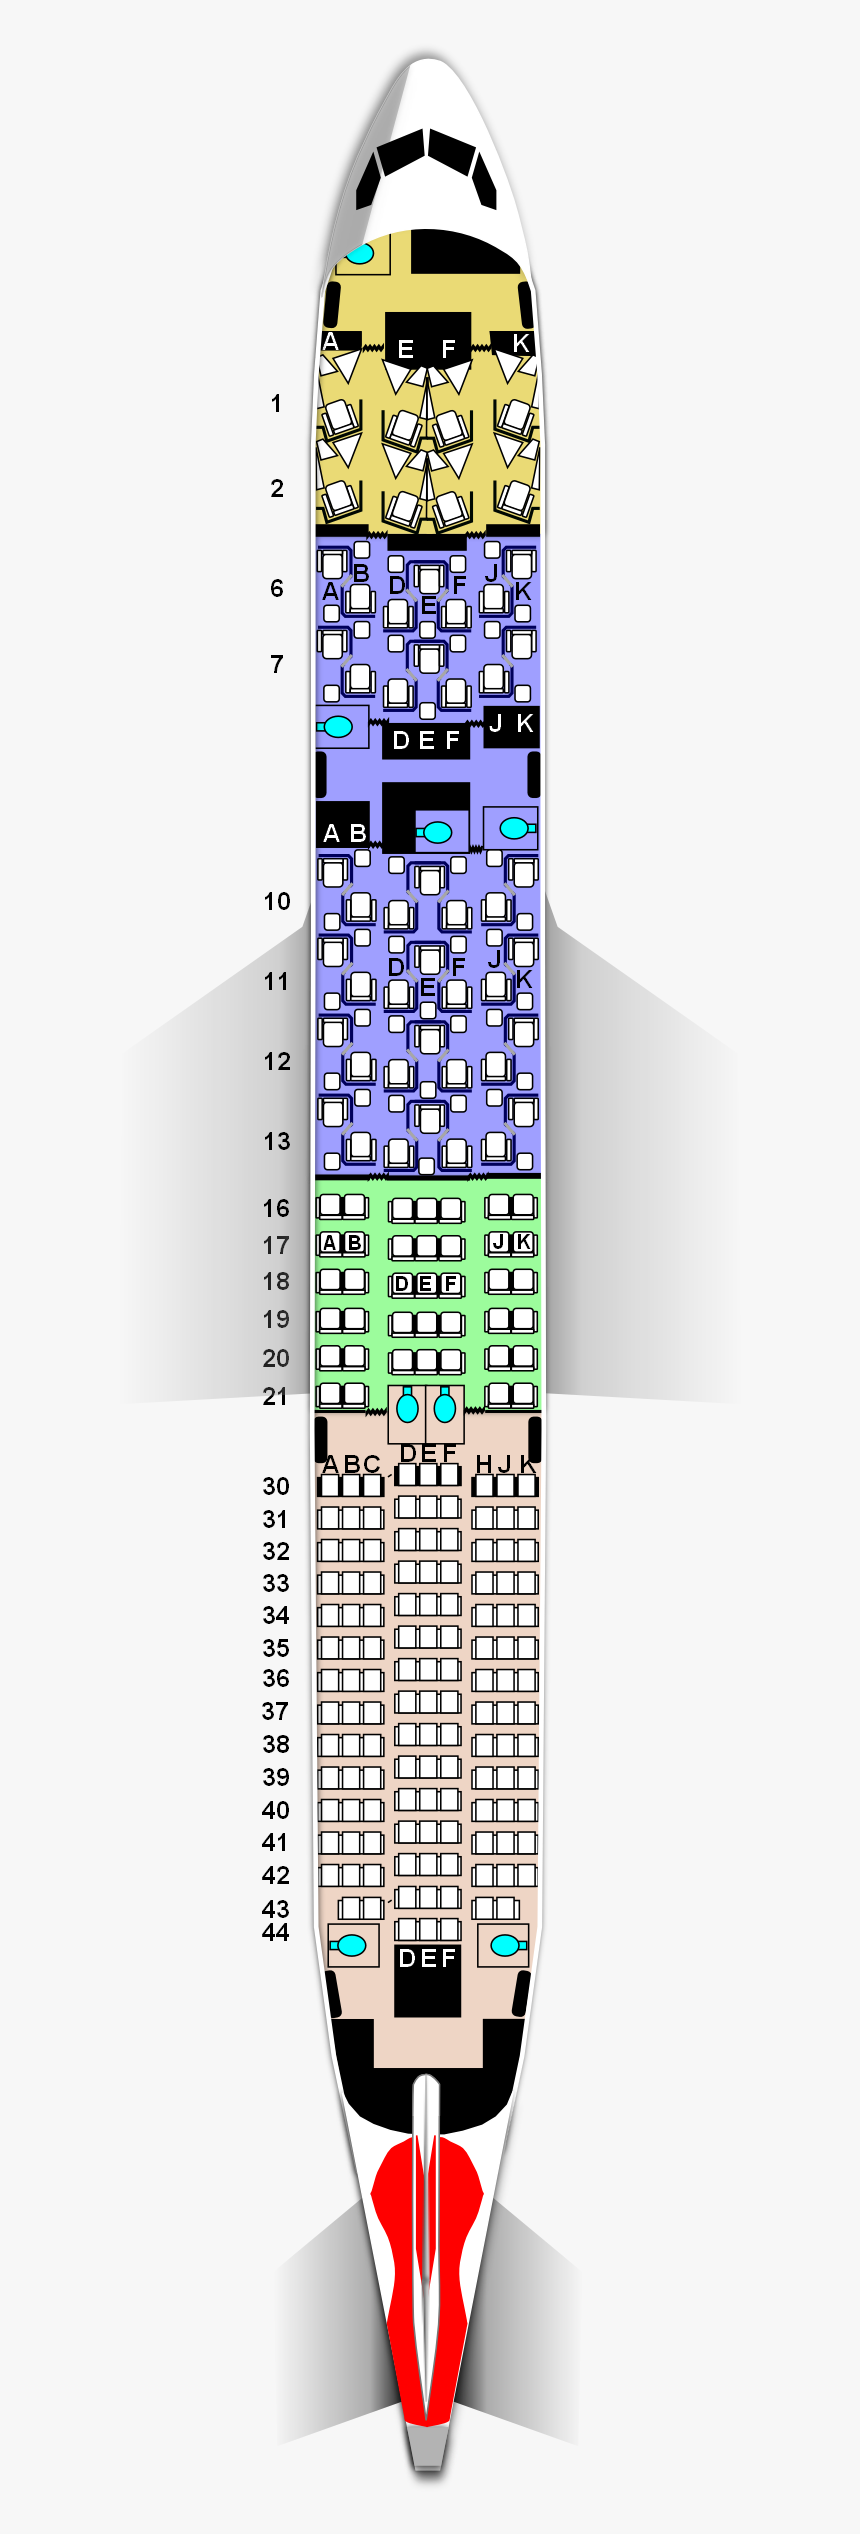 Jetstar Boeing 787 8 Seating Map